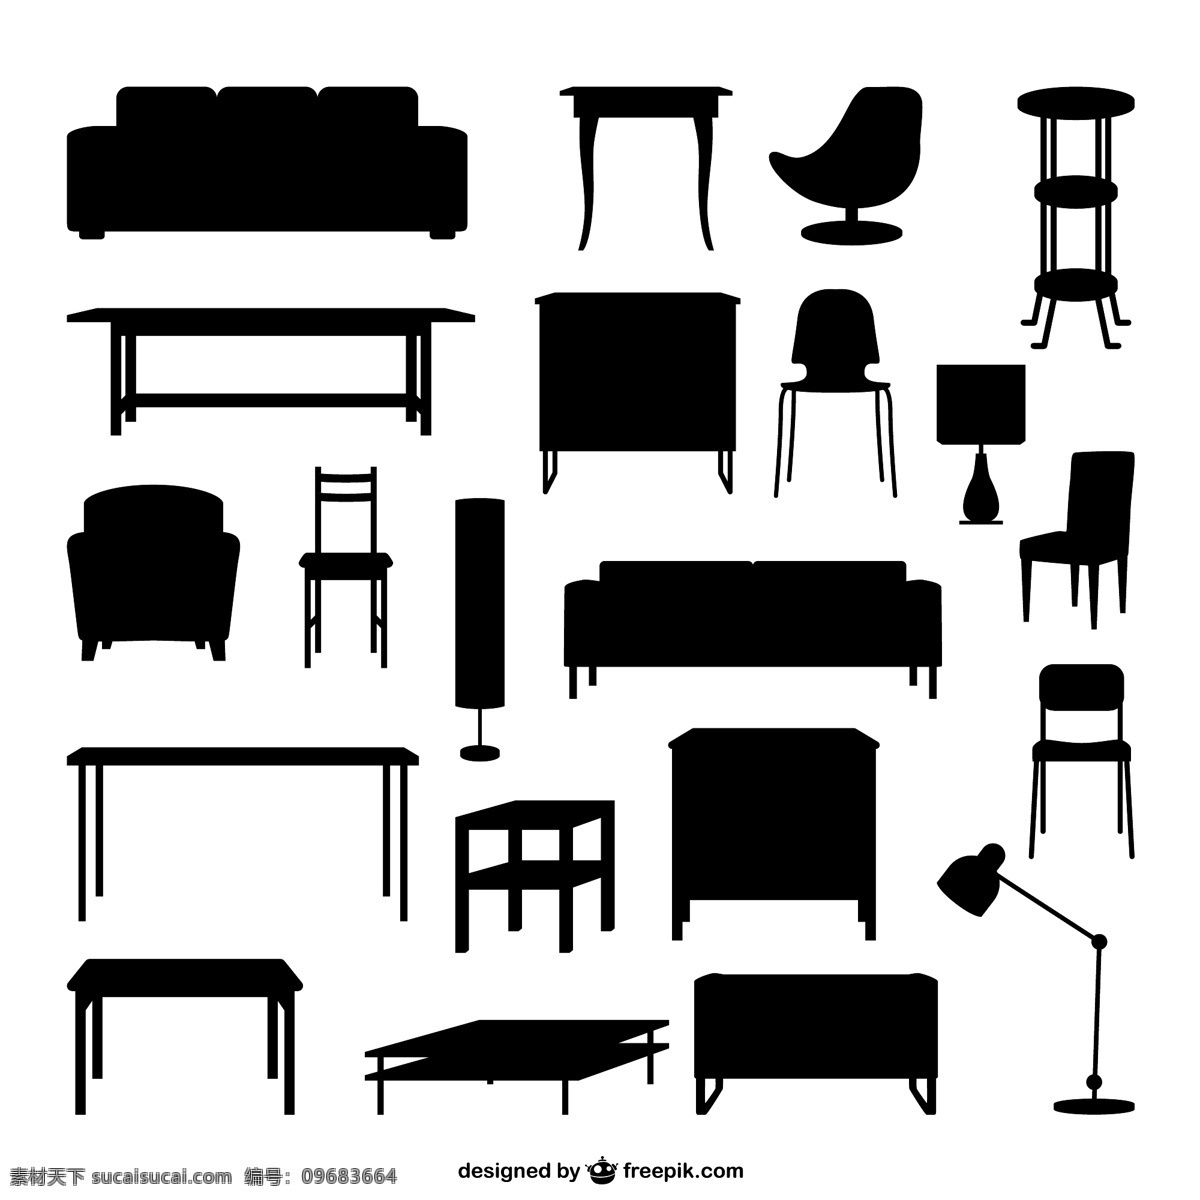 家具剪影矢量 背景 插画 茶几 凳子 柜子 环境设计 家居 家居设计 家具 沙发 休闲椅 台灯 椅子 剪影 海报 经典实用 家居装饰素材